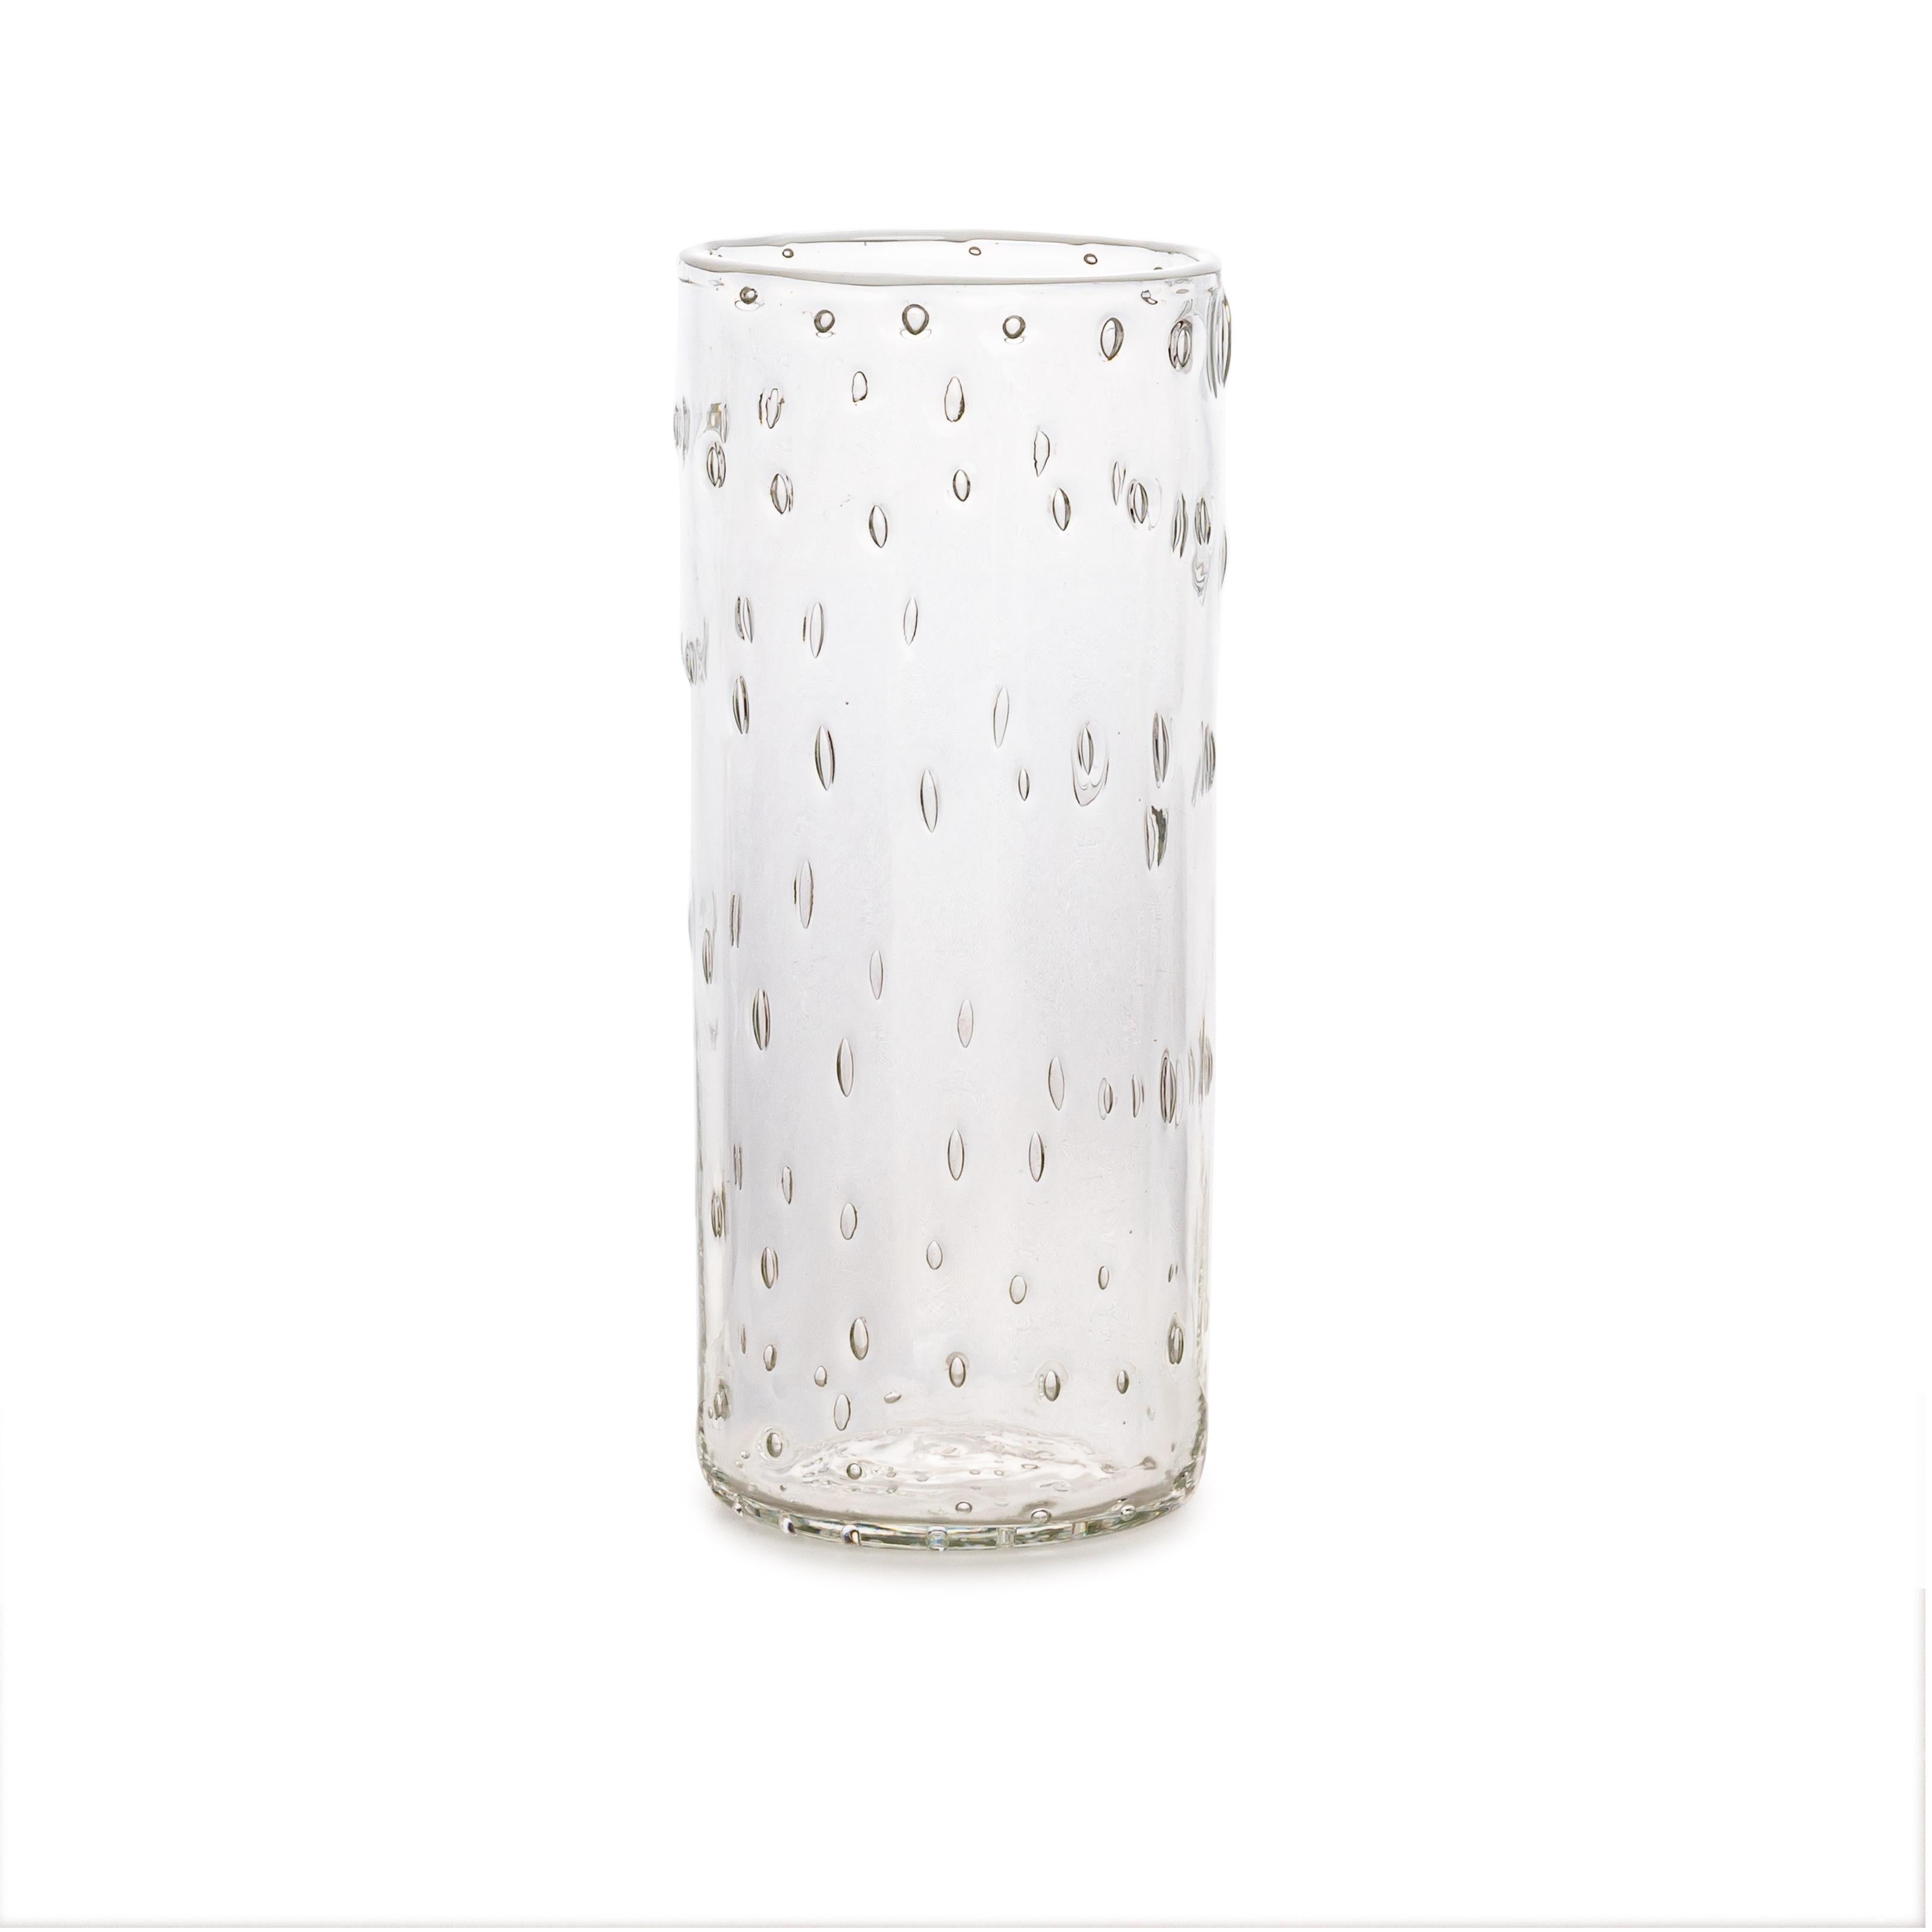 Découvrez nos gobelets ultralégers en verre de Murano, méticuleusement fabriqués par un expert Maestro spécialisé dans l'art du soufflage à la bouche. Ces gobelets sont habilement créés sans l'utilisation de moules, ce qui garantit leur qualité